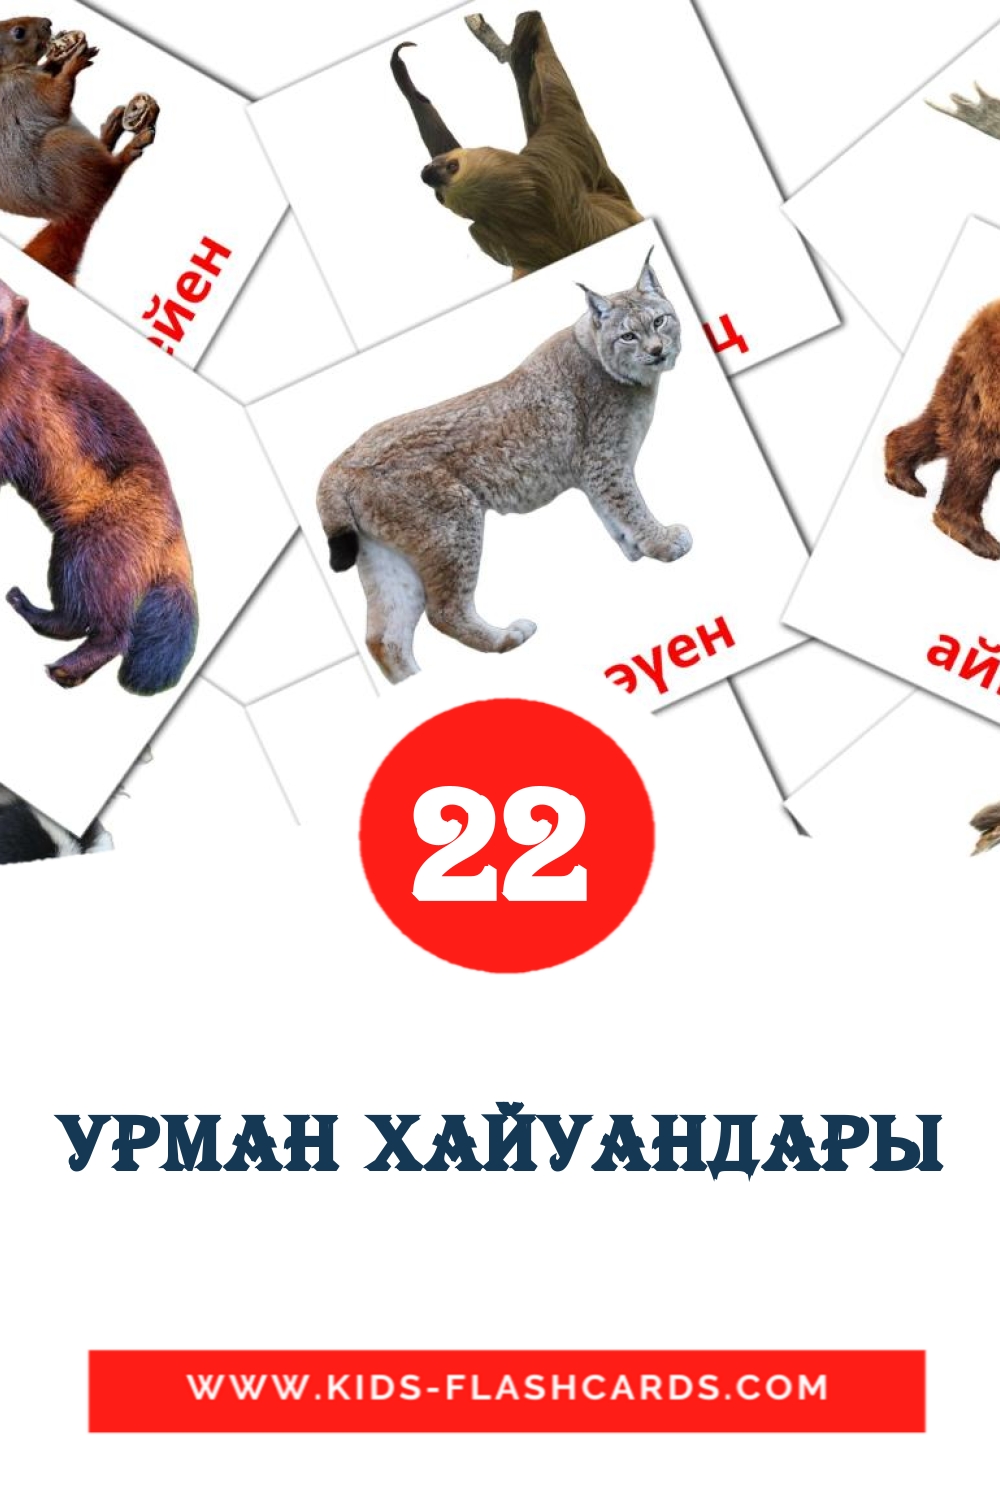 22 carte illustrate di урман хайуандары per la scuola materna in bashkir